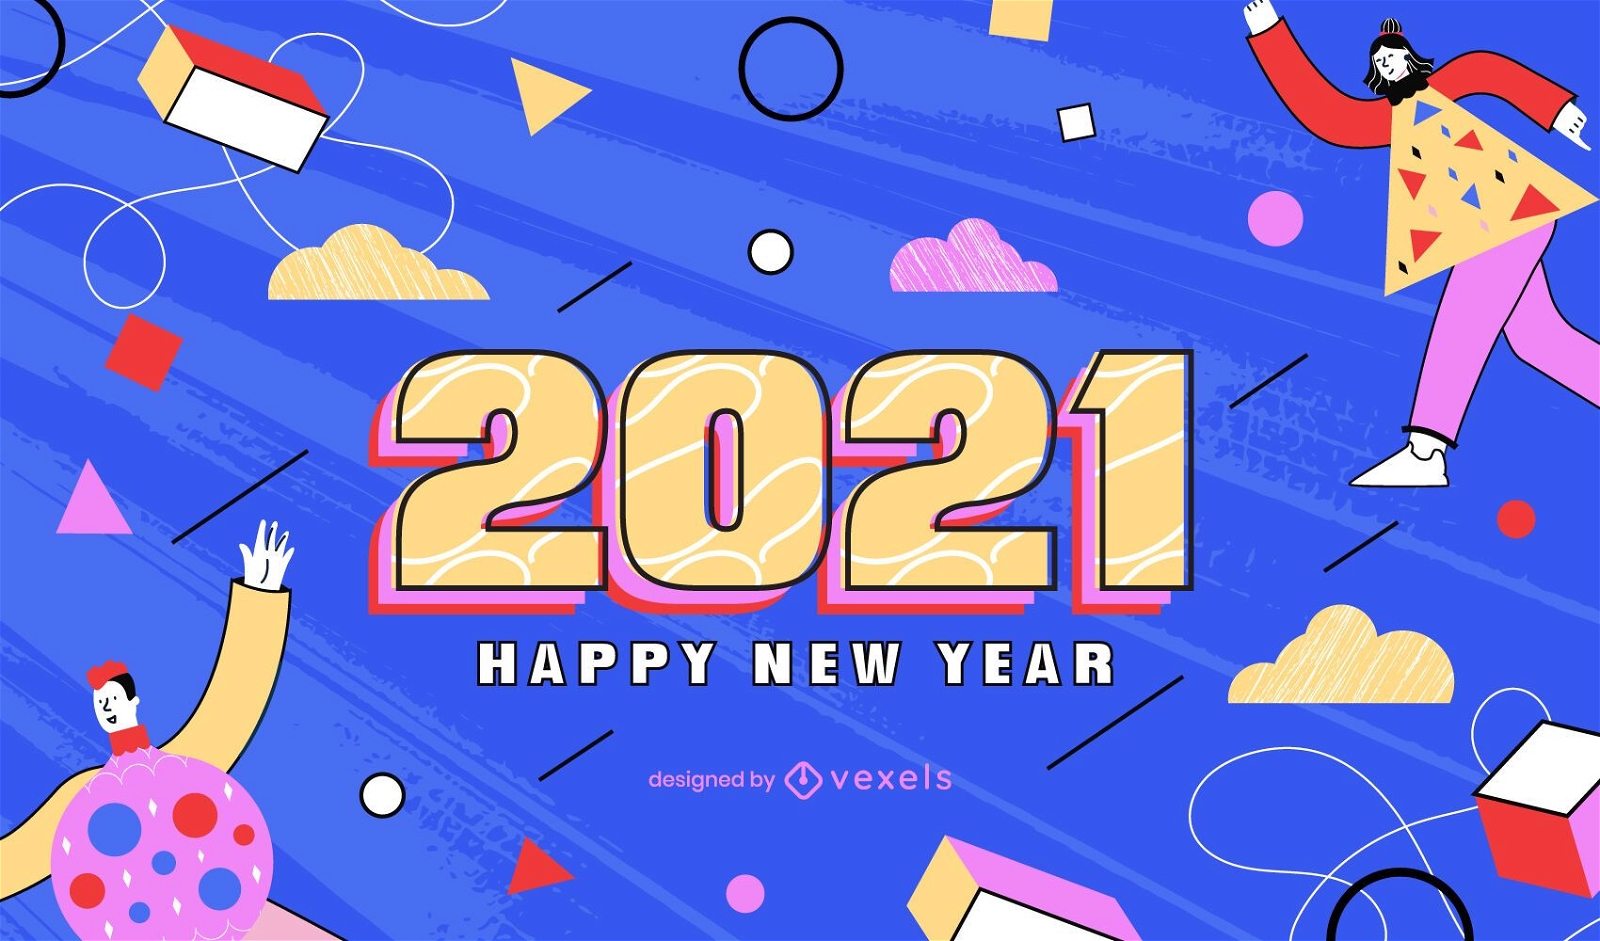 New year 2021 background design